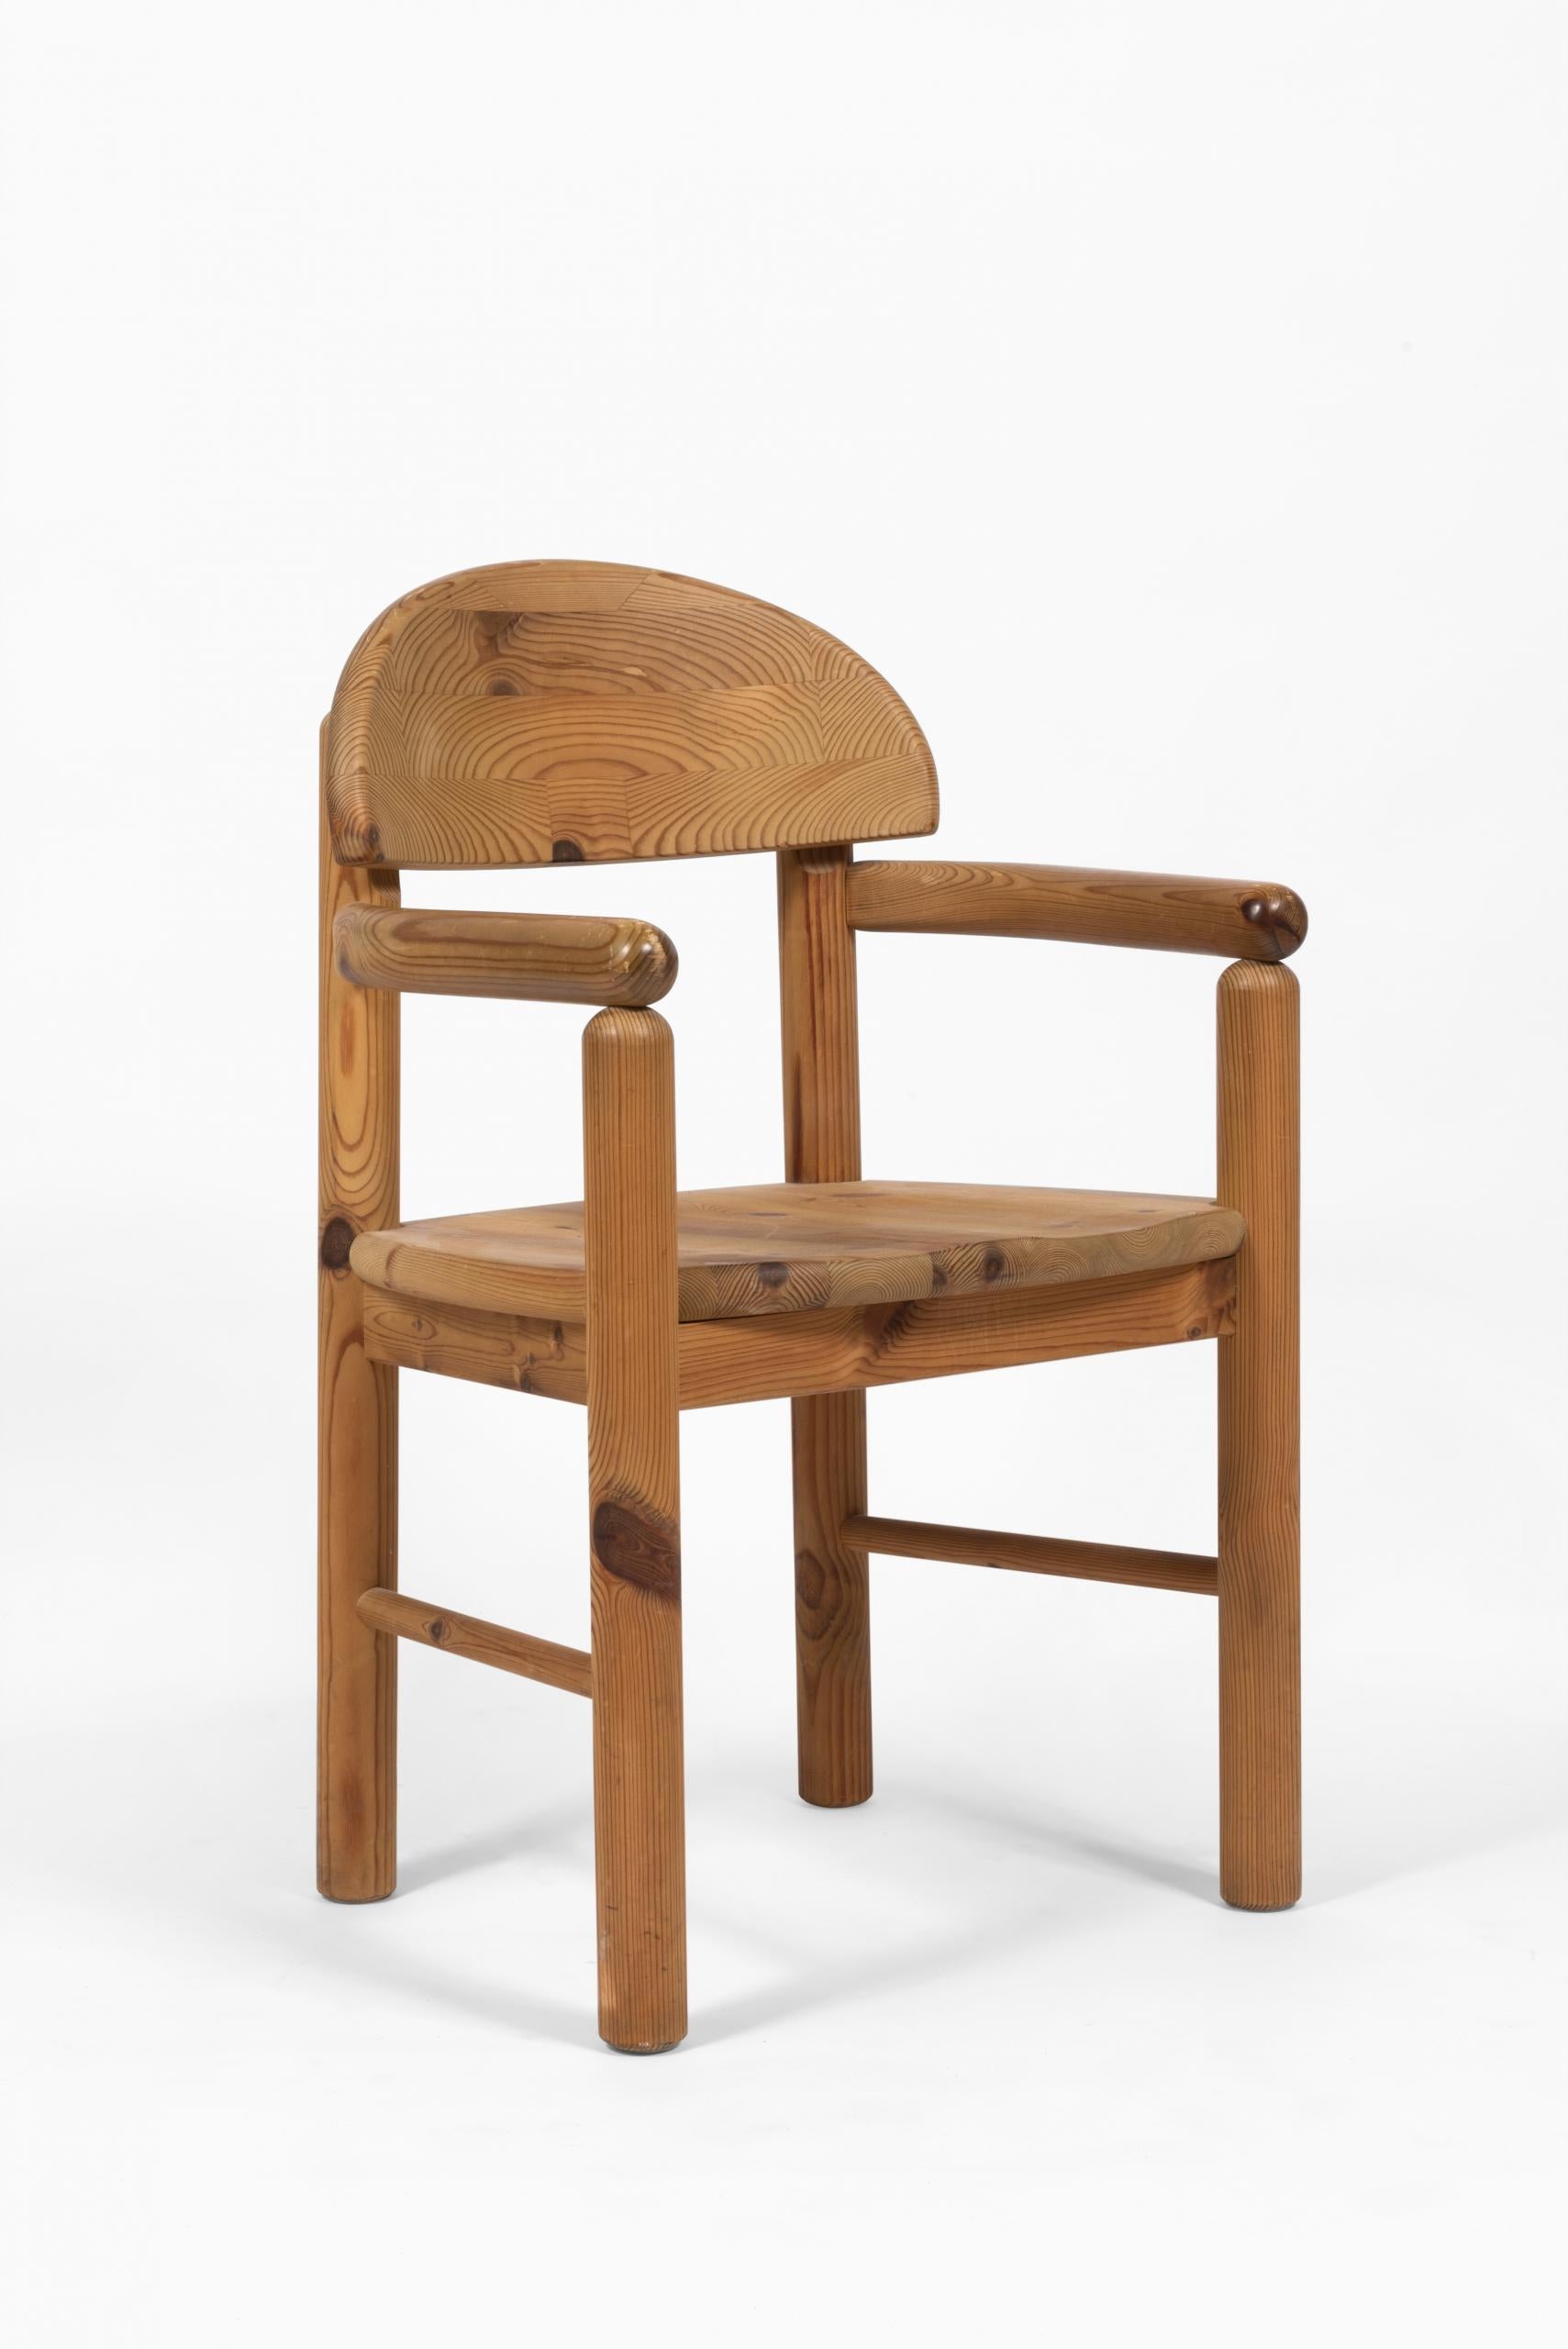 Ensemble de 6 chaises en pin poli dans le goût de Rainer Daumiller, style mobilier brutaliste.

Modèle produit par Hirtshals Savvaerk Mobler Denmark (scierie Hirtshals). Fabrication selon la qualité et le design scandinave.

4 chaises + 2